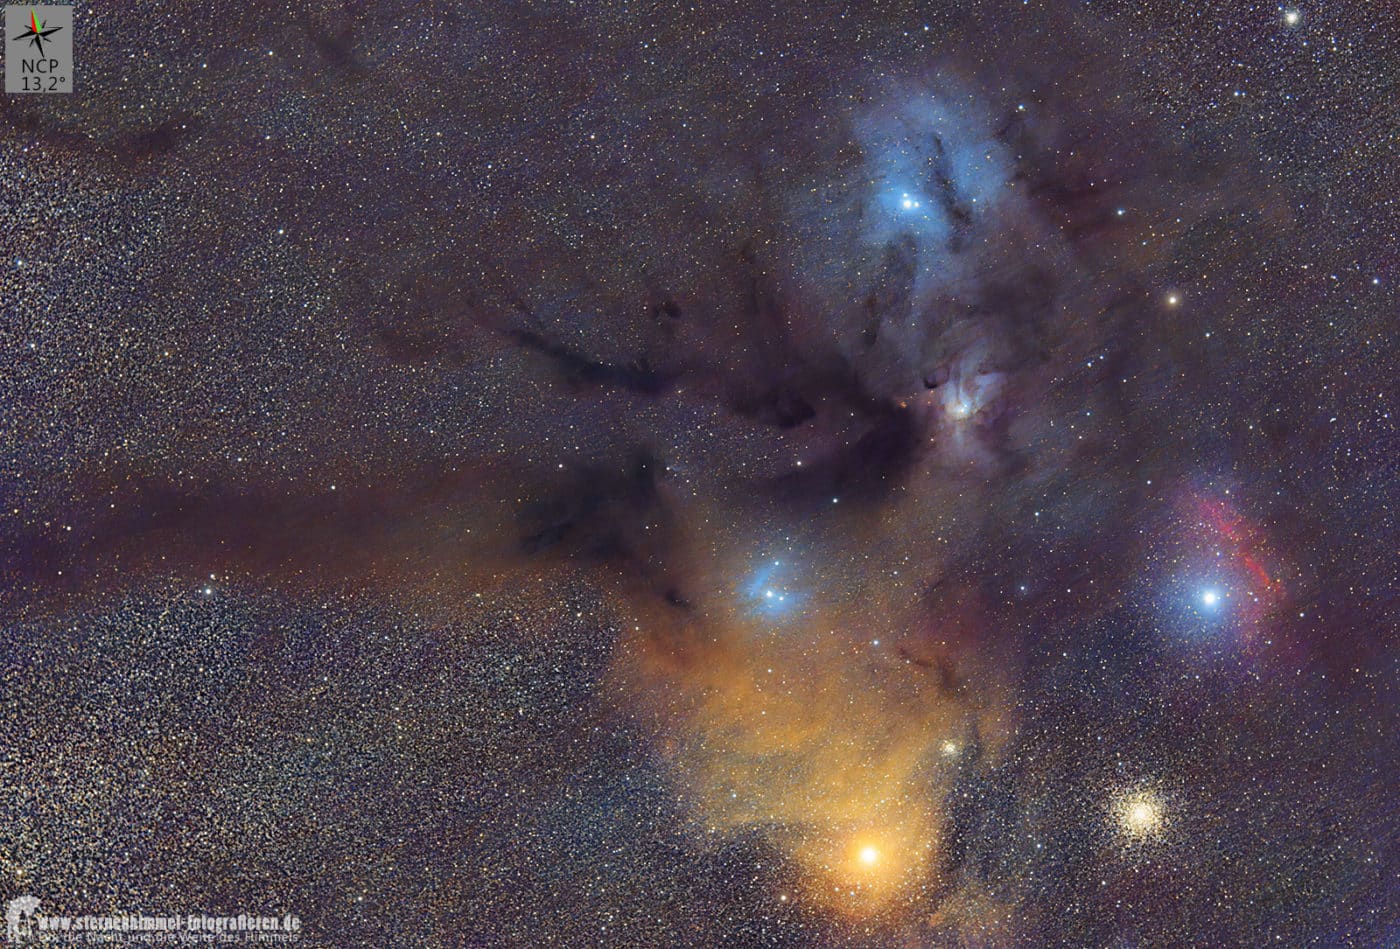 Antares / Rho Ophiuchi im Sternbild Skorpion - Test Bild mit iOptron Skyguider Pro und EDPH II Omegon 61/274 Apo